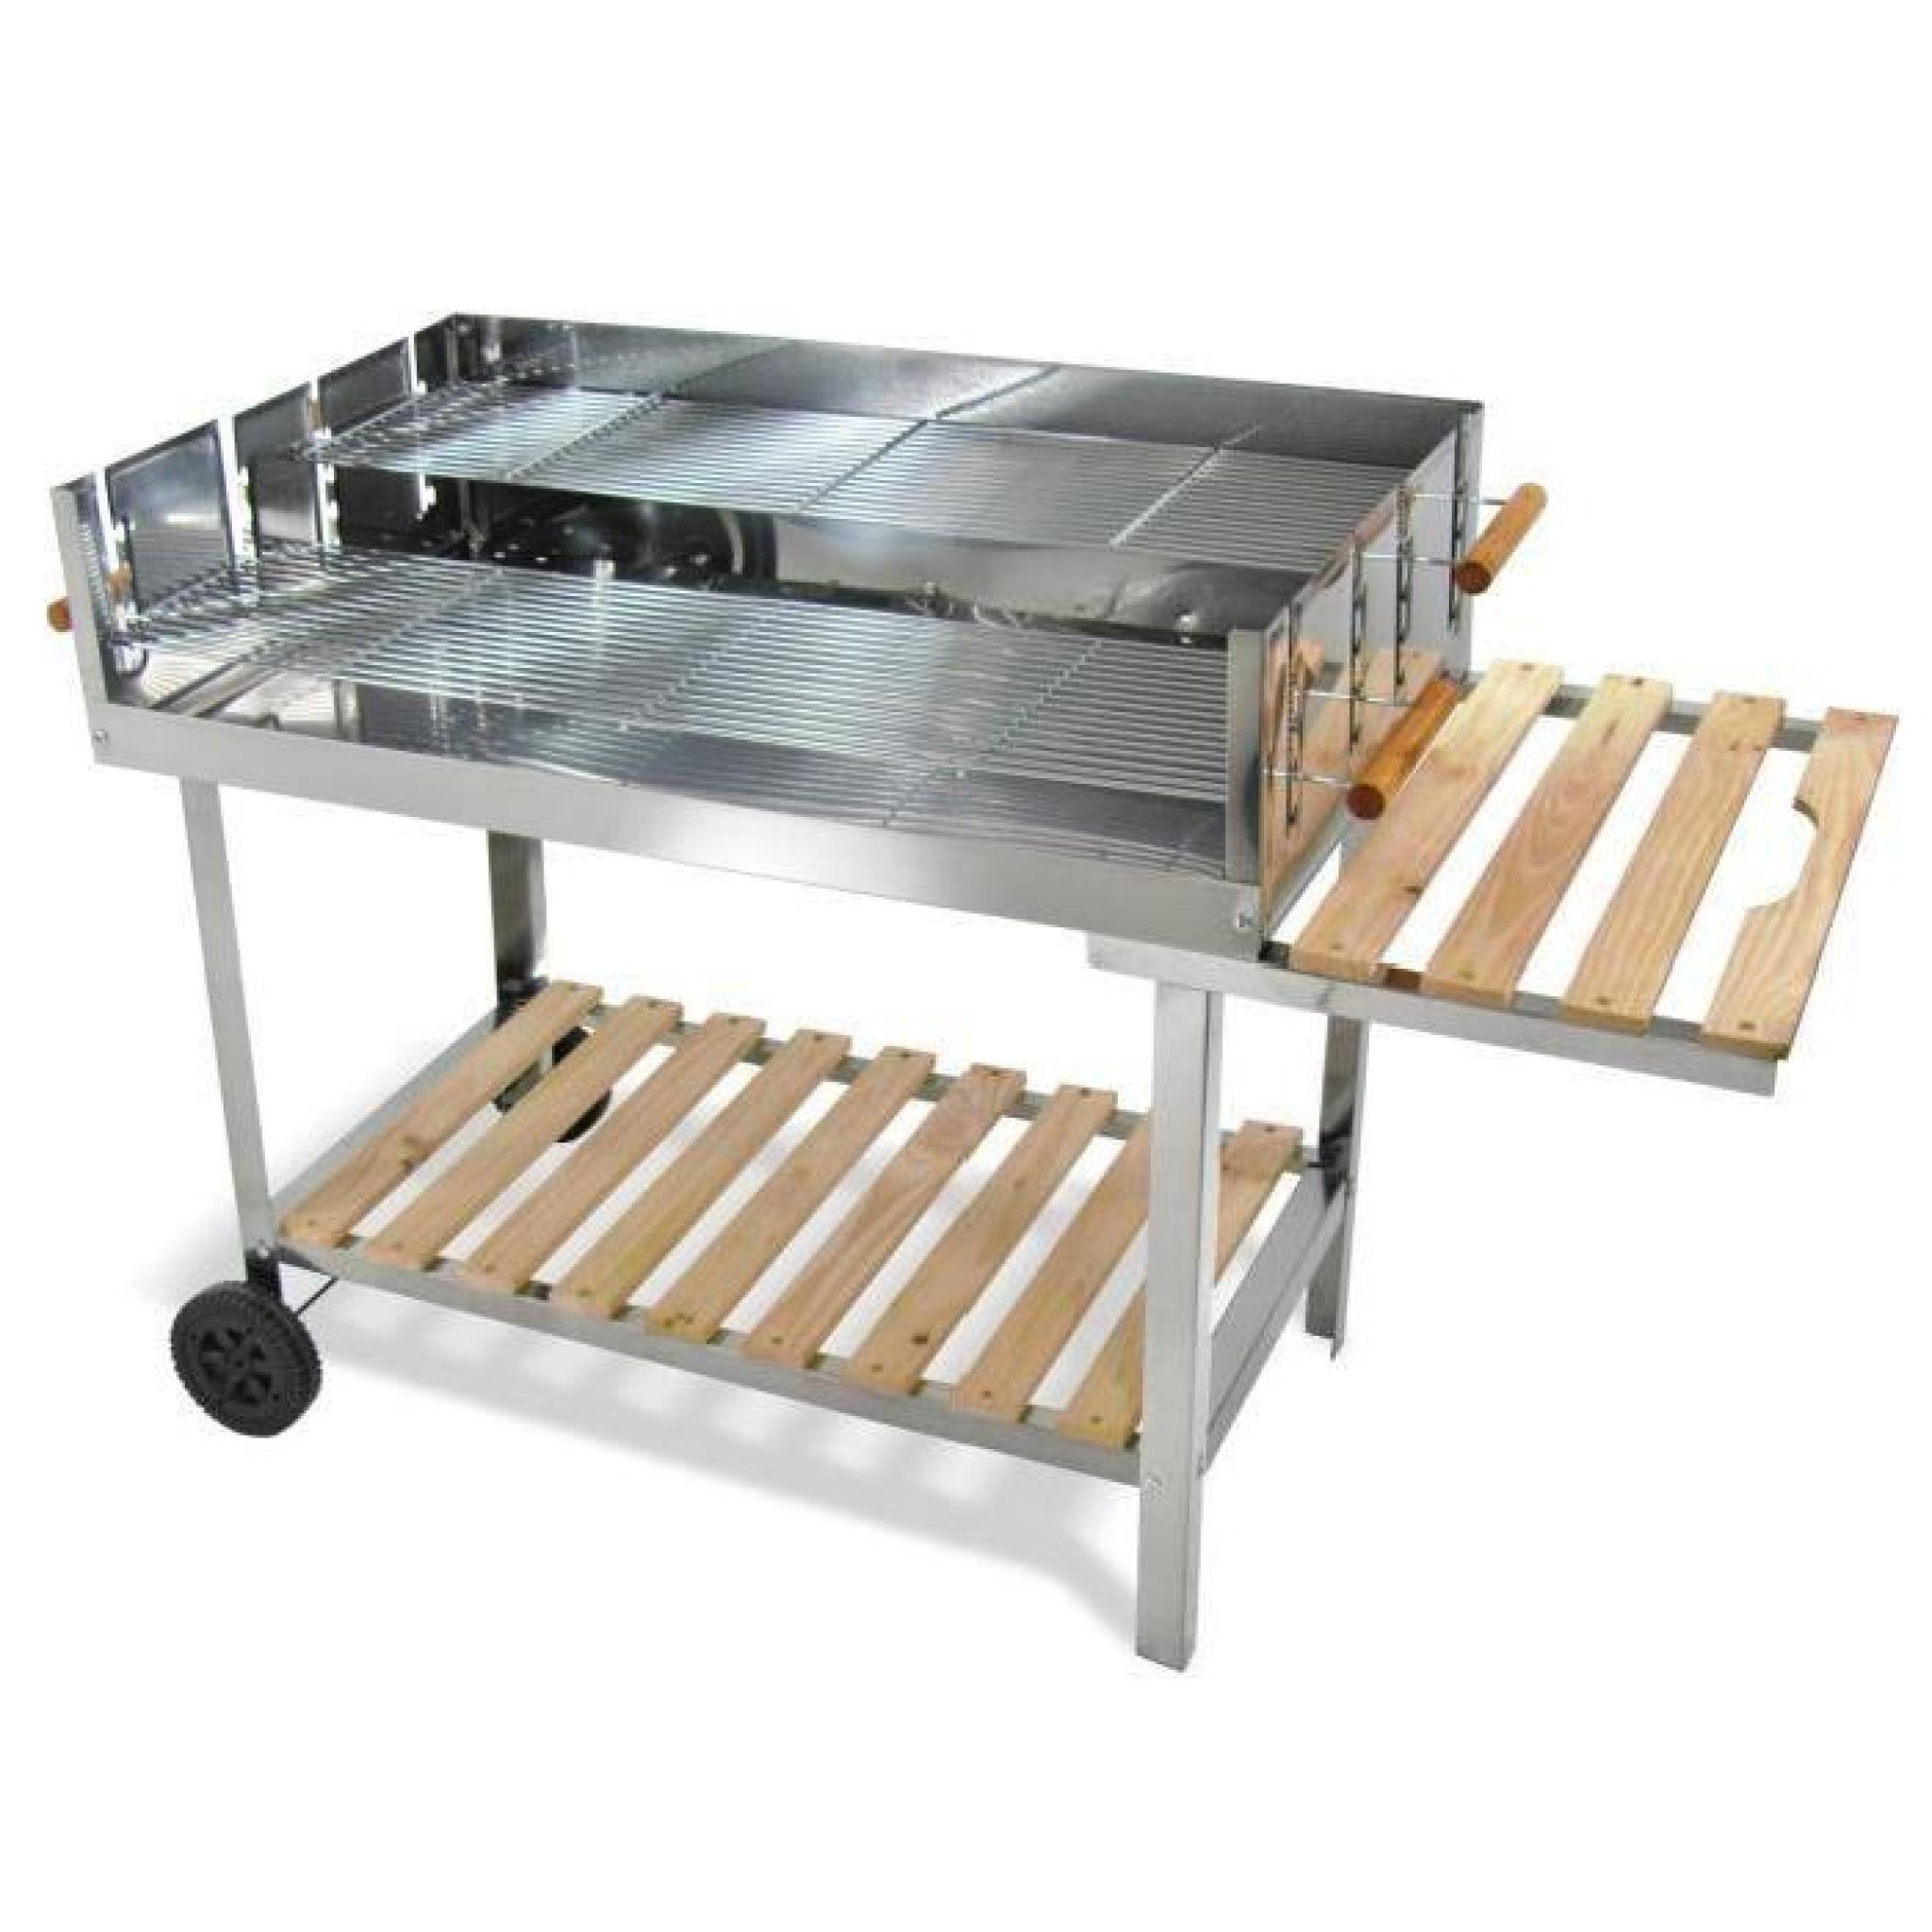 Table de Barbecue (feux de bois), Matiere: Inox, Dimension: 136cm x 60cm x 93cm, Surface du Grill: 100cm x 60 cm, plage